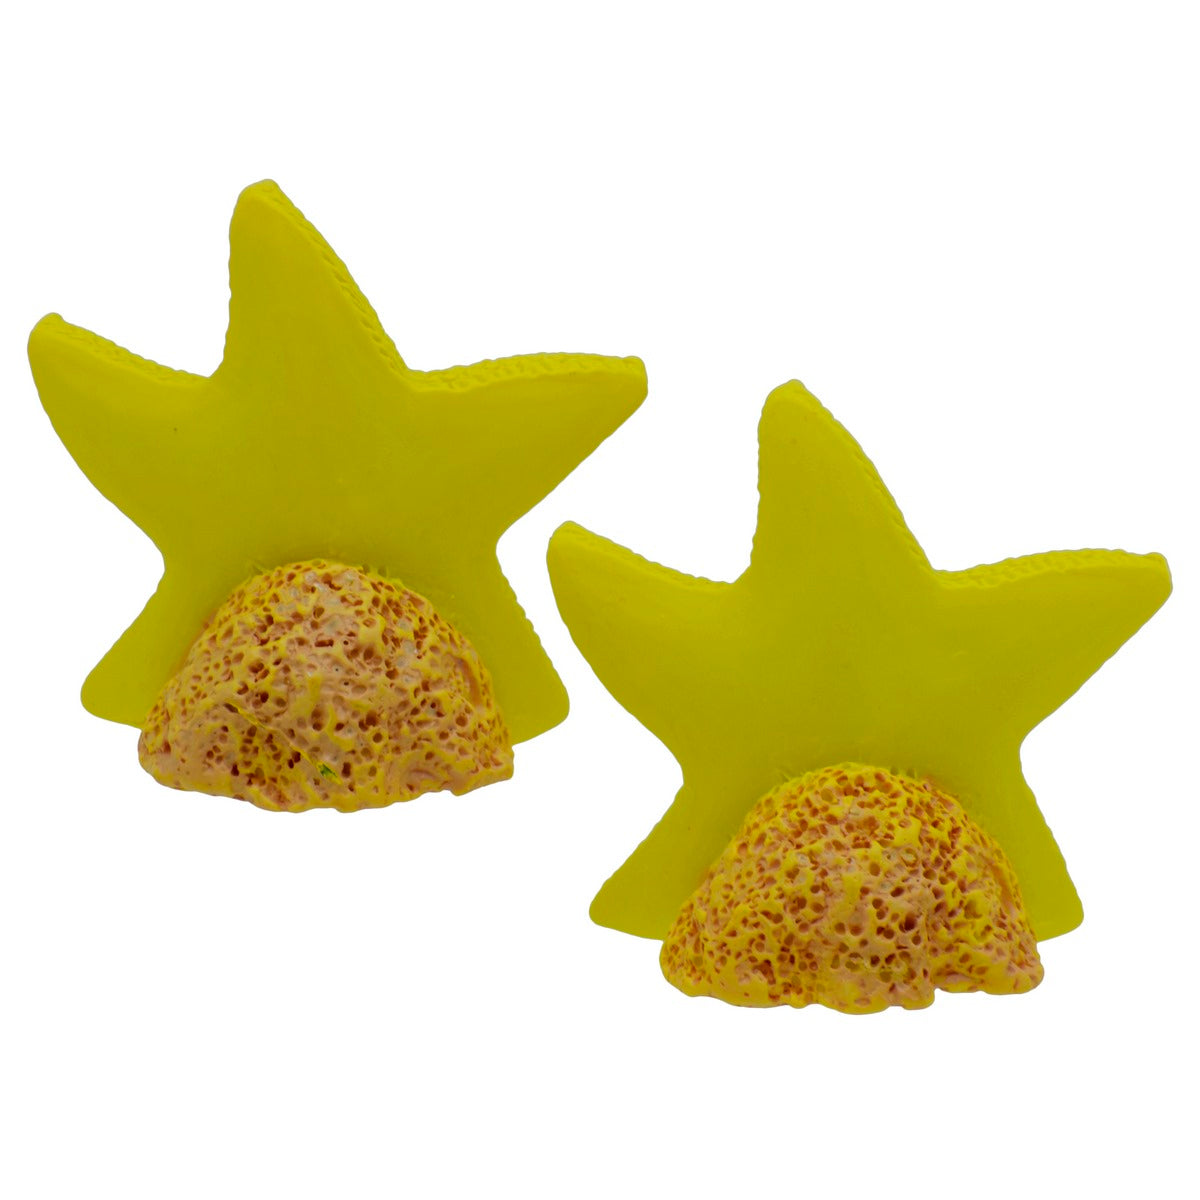 jags-mumbai Miniature Miniature Model Star Fish Pcs (C0048-5) MMA16